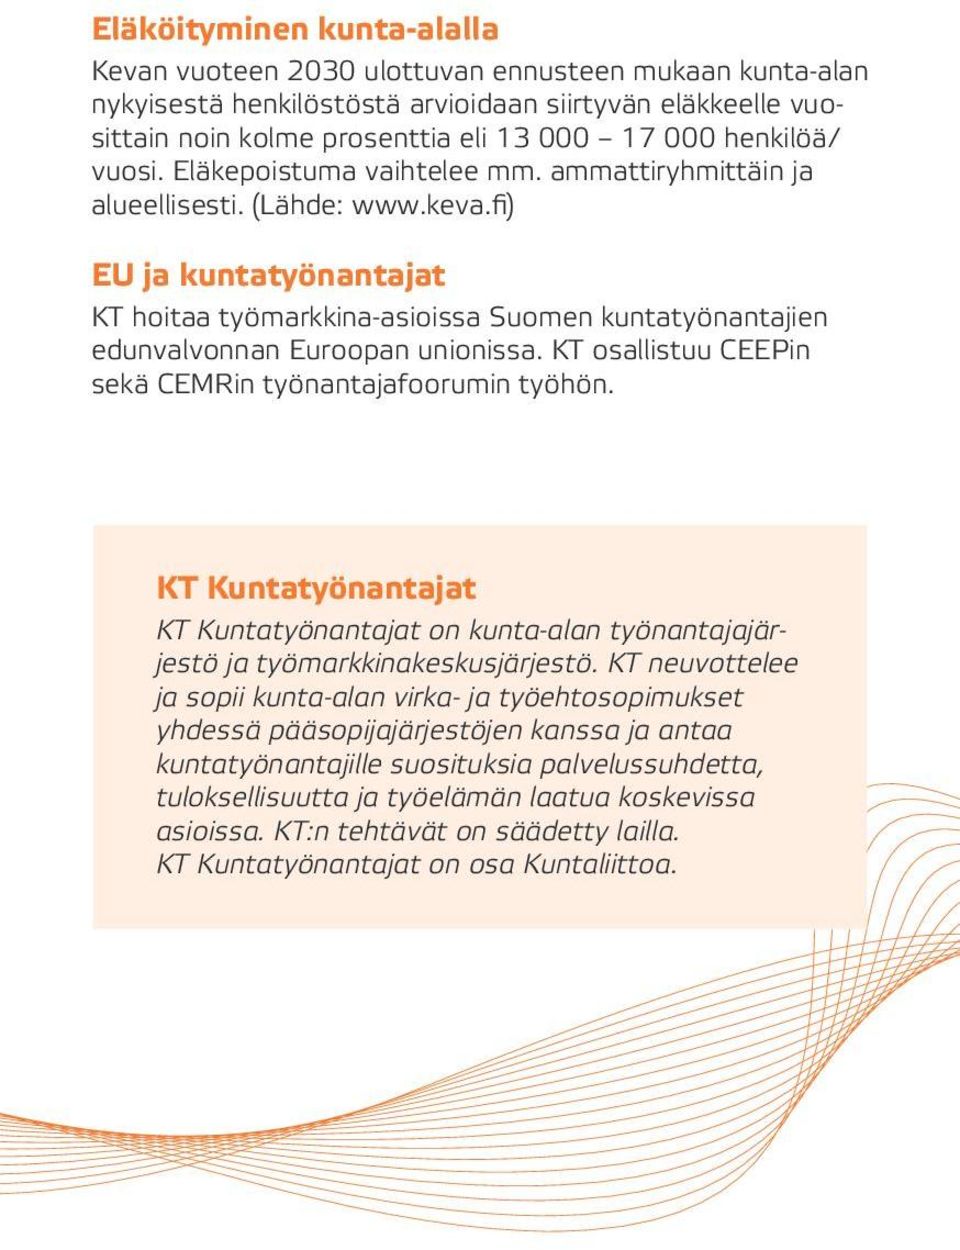 fi) EU ja kuntatyönantajat KT hoitaa työmarkkina-asioissa Suomen kuntatyönantajien edunvalvonnan Euroopan unionissa. KT osallistuu CEEPin sekä CEMRin työnantajafoorumin työhön.